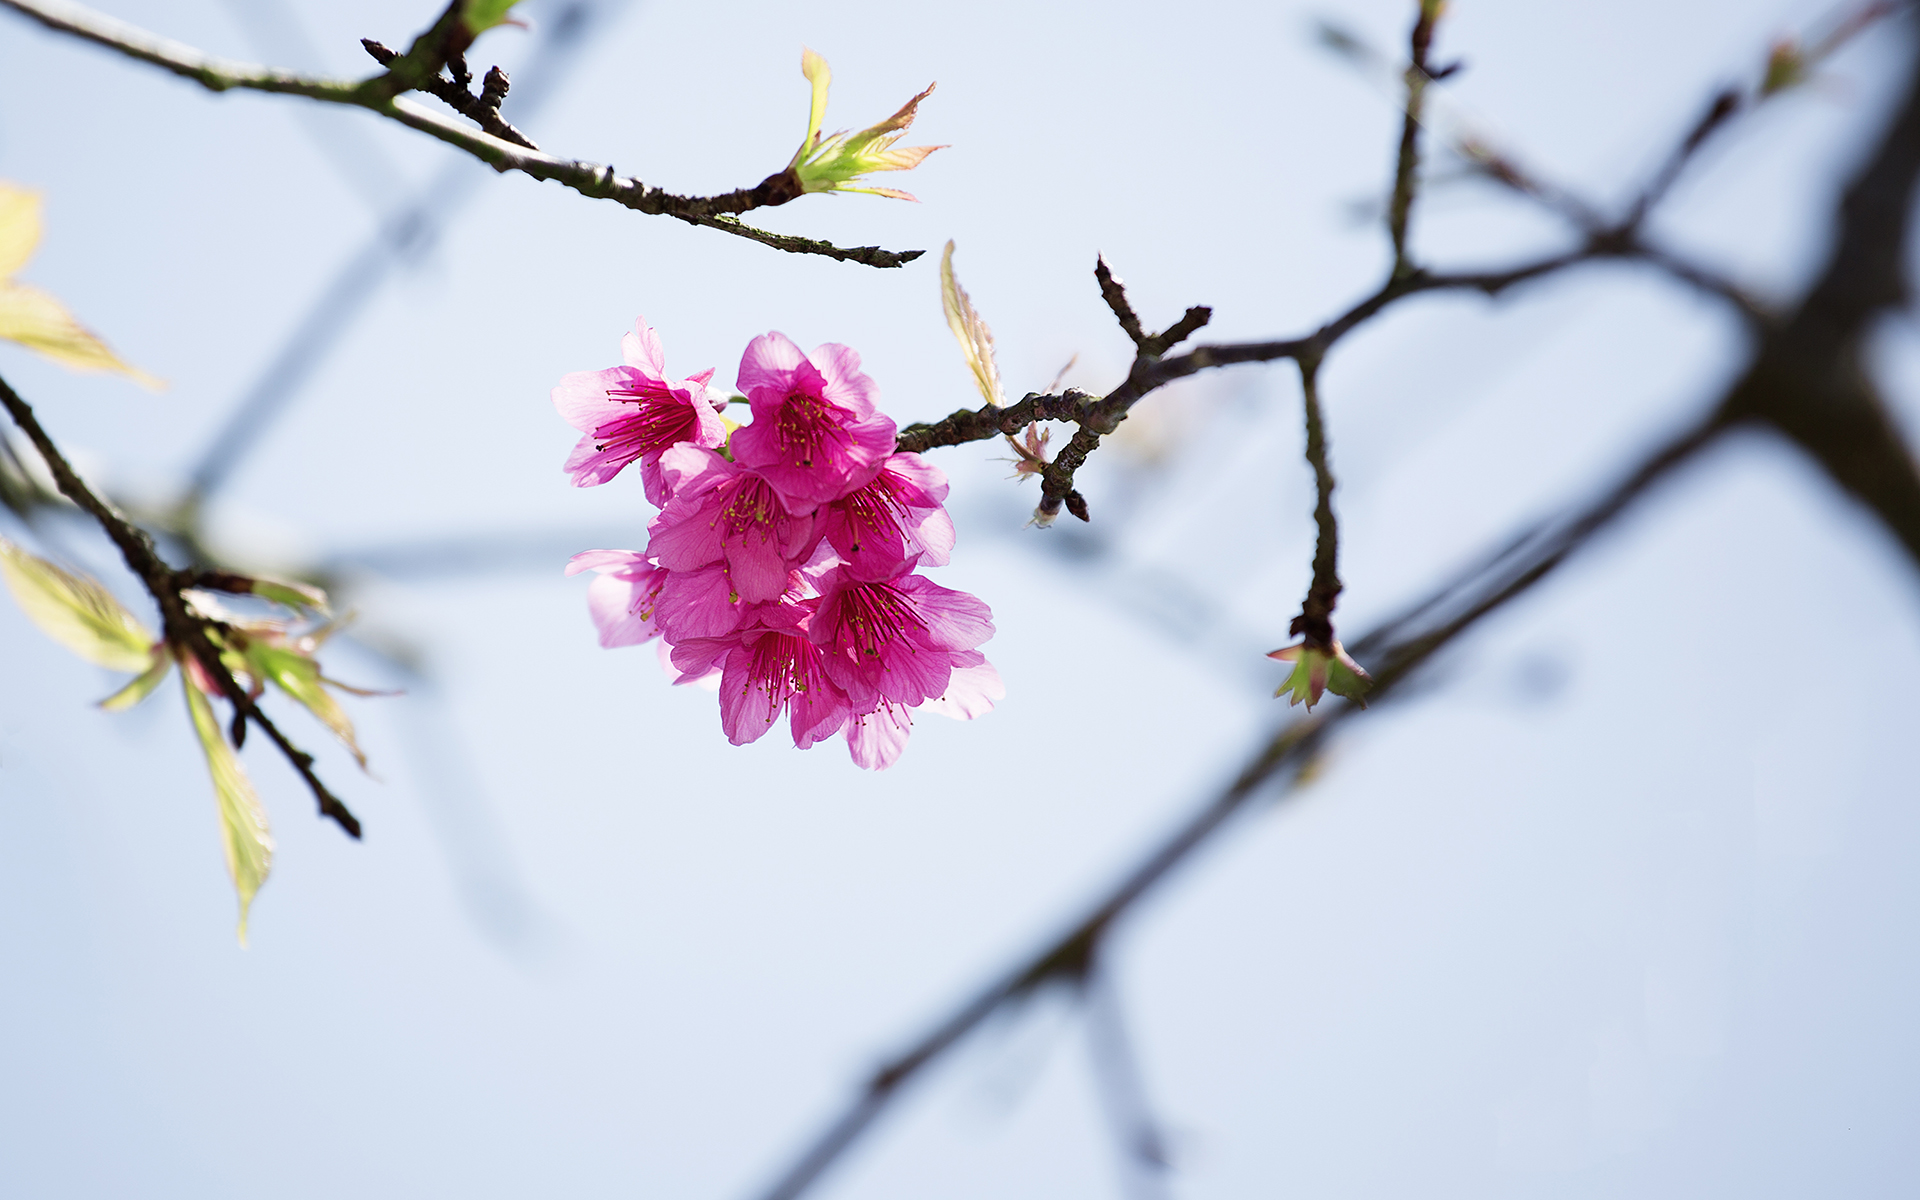 有关淡雅的图片 樱花唯美摄影高清图片